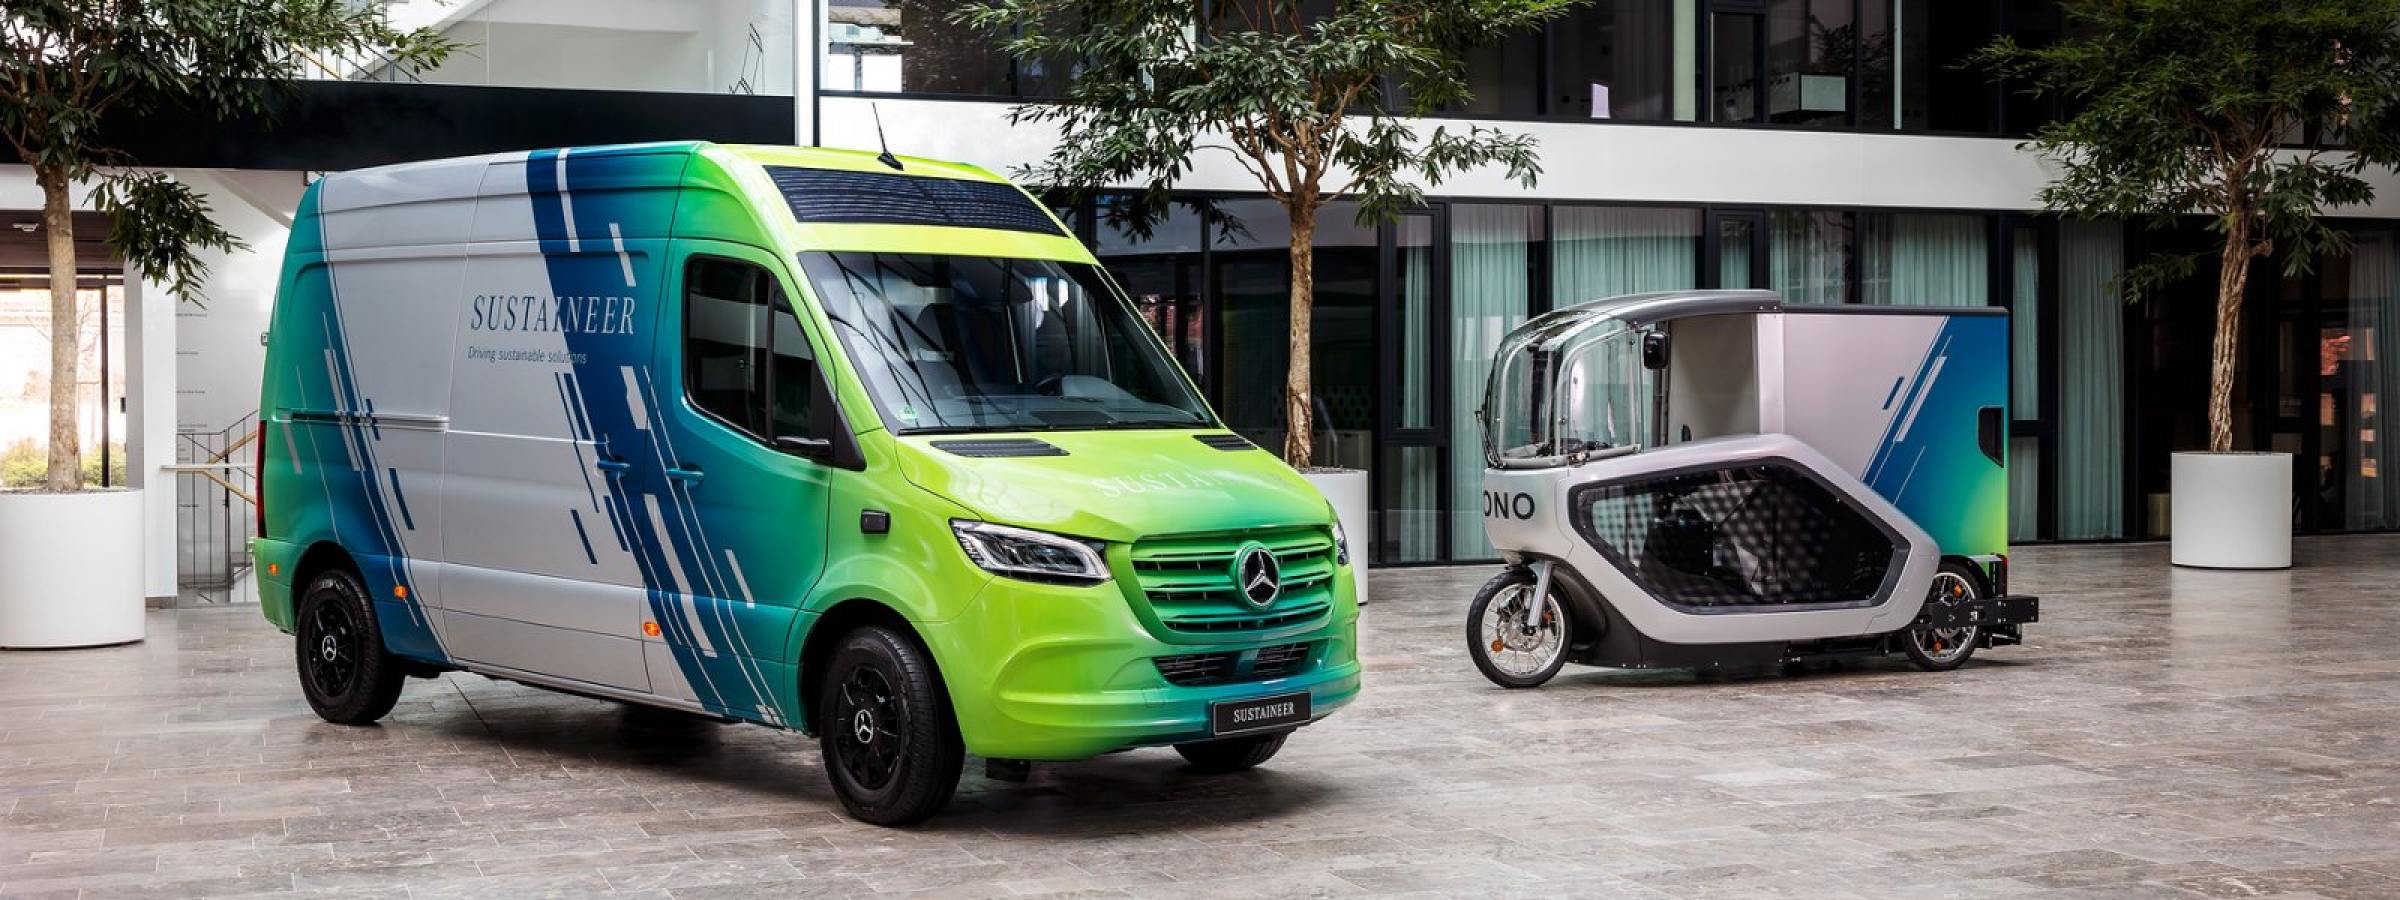 Weiterentwicklung des Mercedes-Benz SUSTAINEER und Lastenrad-Kooperation mit ONOMOTION